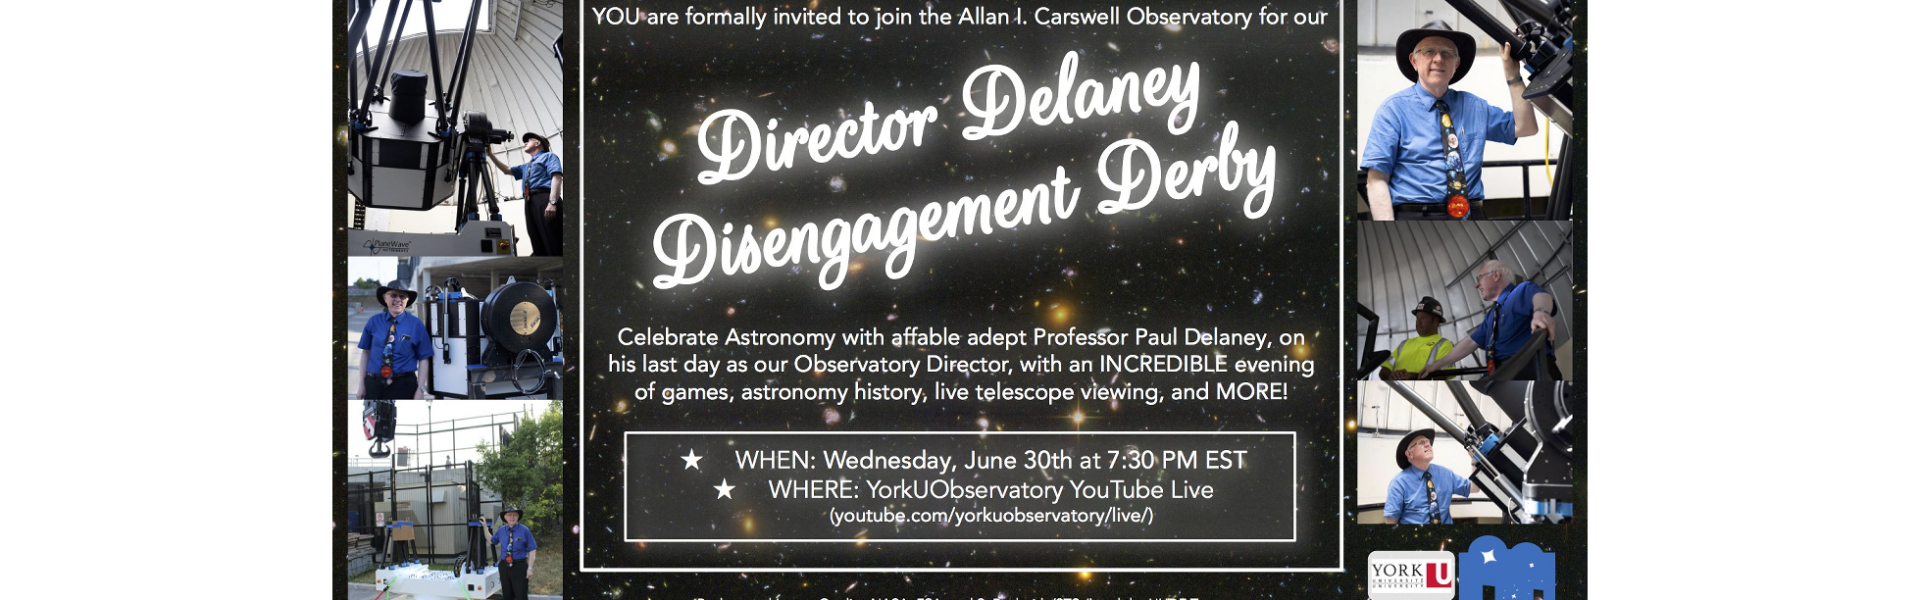 Director Delaney Disengagement Derby